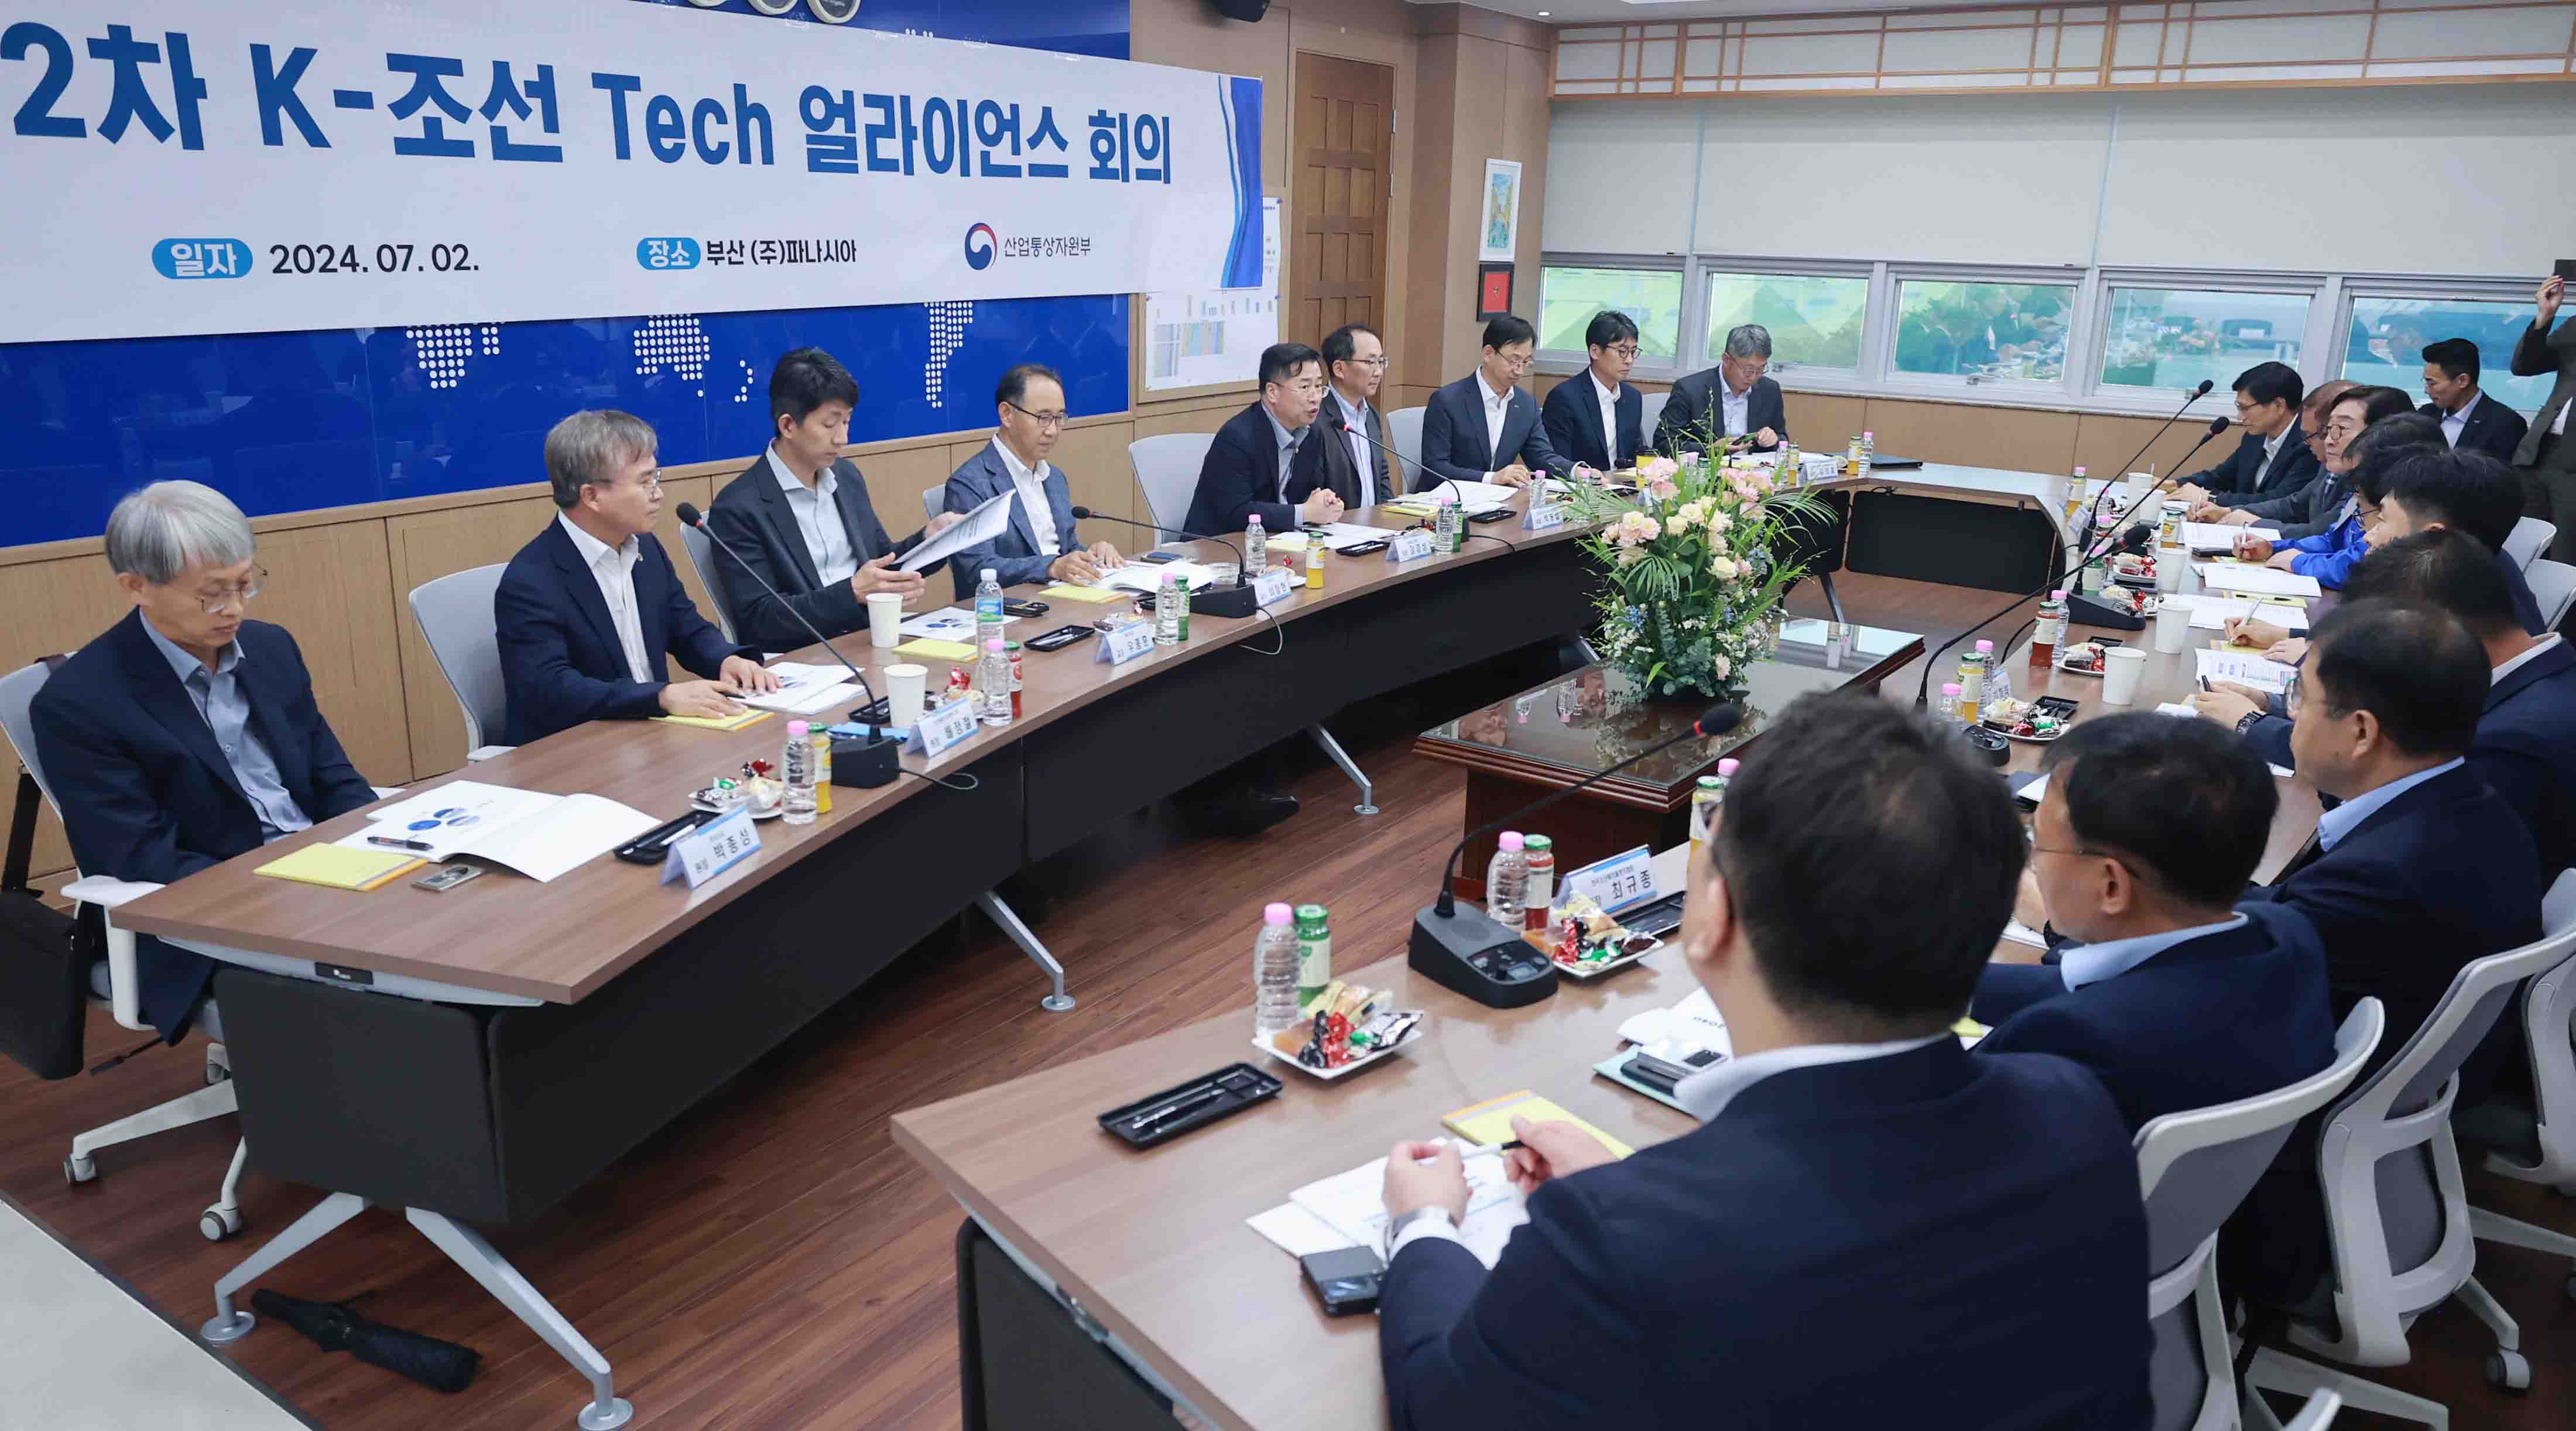 제2차 K-조선 Tech 얼라이언스 회의